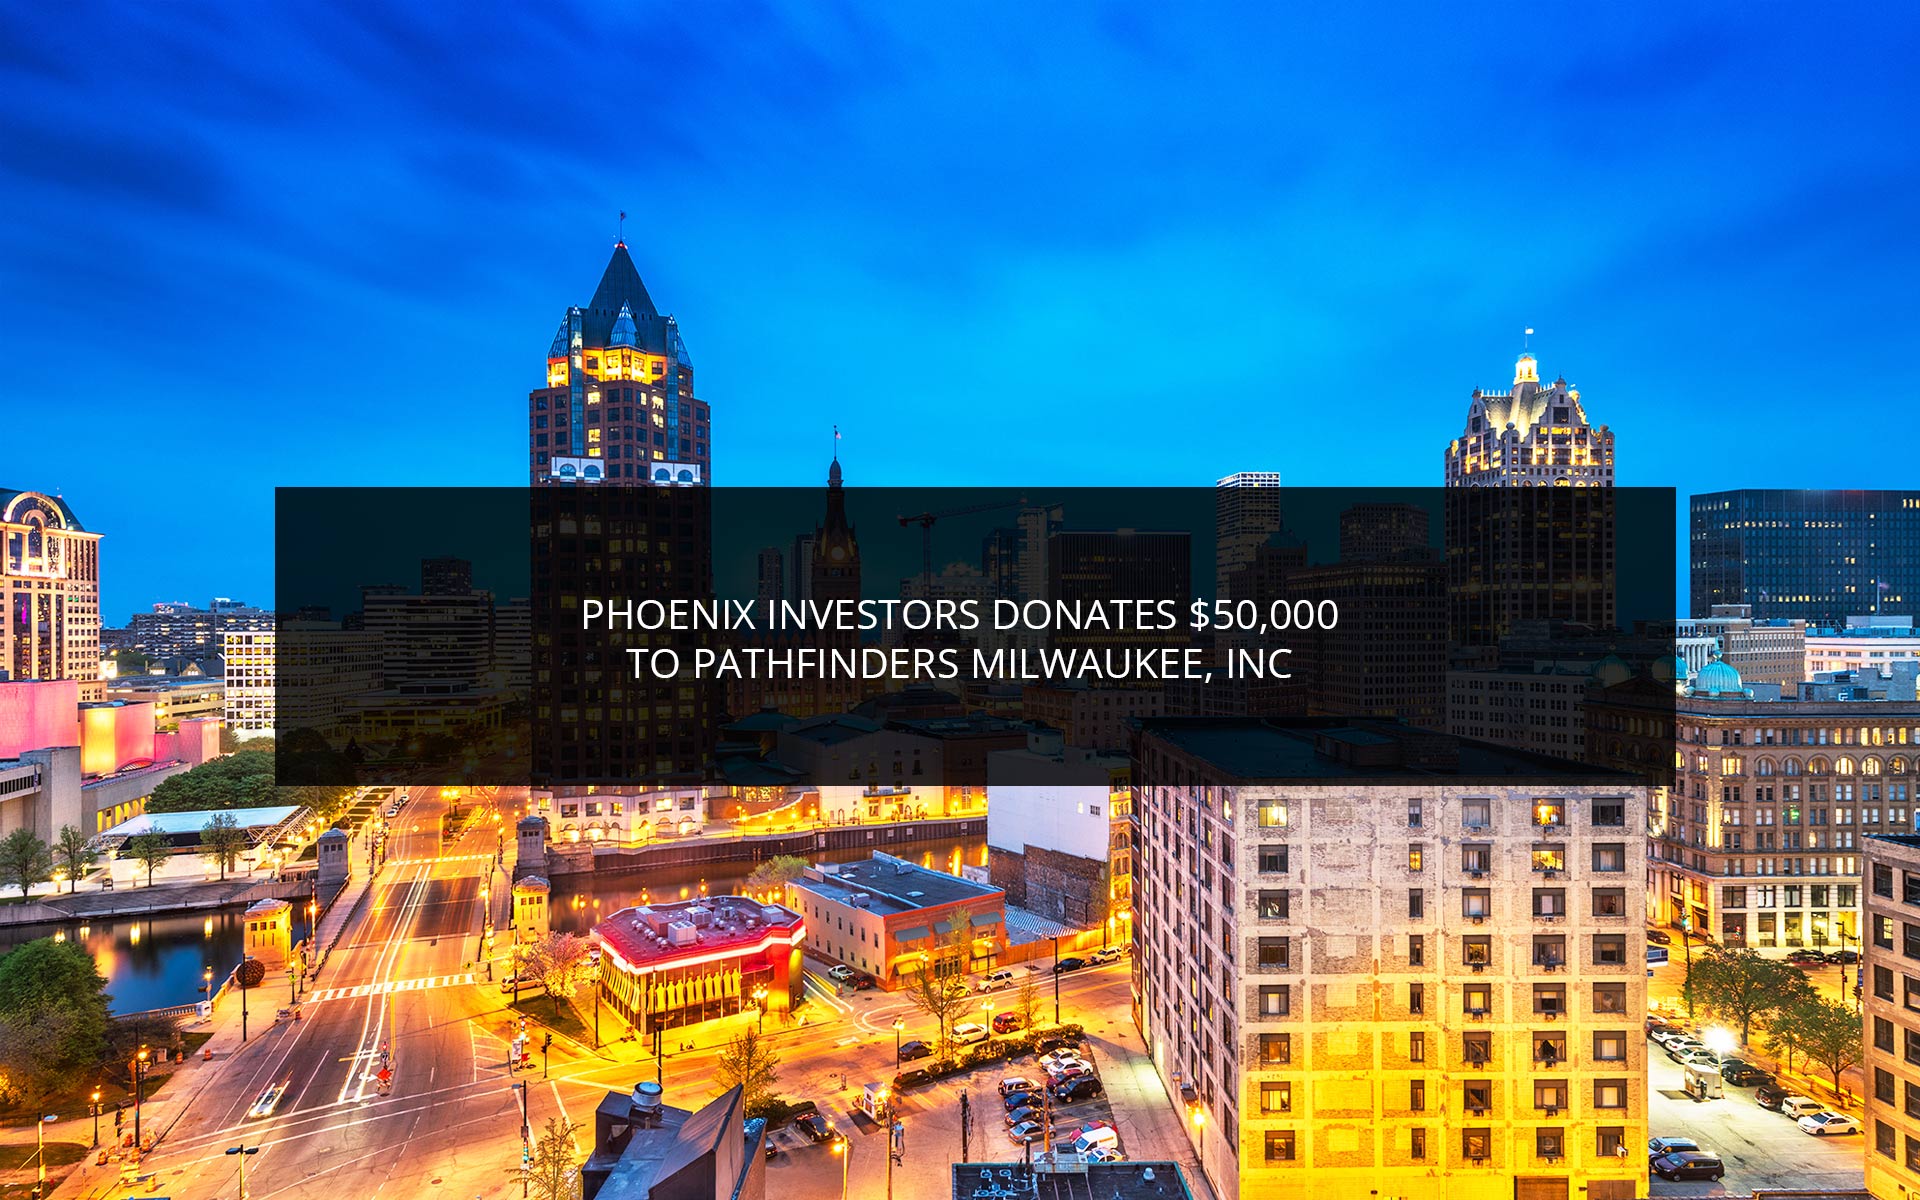 Phoenix Investors Donates $50,000 To Pathfinders Milwaukee, Inc.